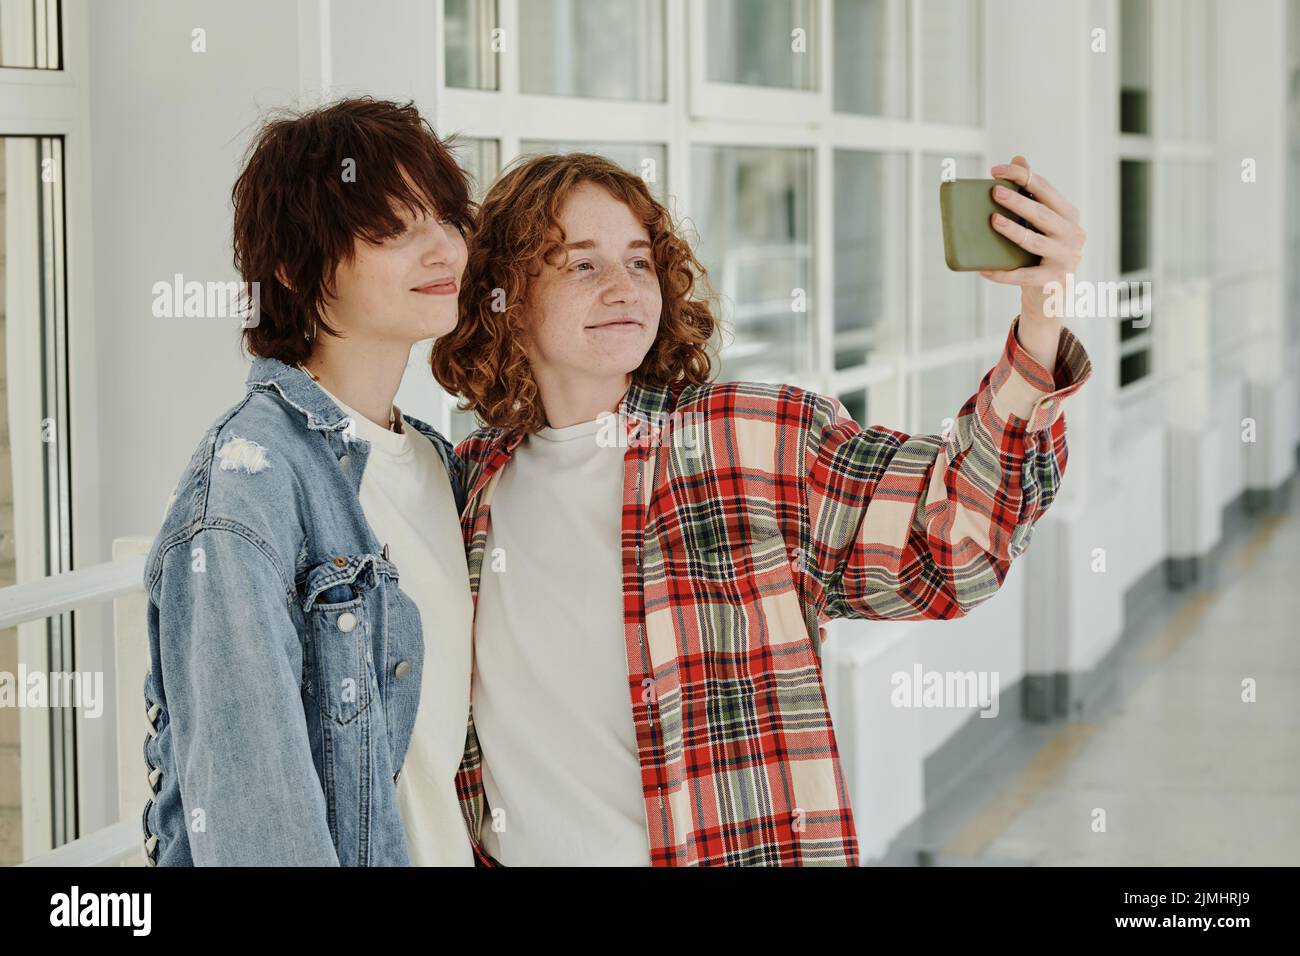 Due ragazze adolescenti felici che prendono selfie nel corridoio del college alla pausa mentre si levano in piedi l'una vicino all'altra e guardano la fotocamera dello smartphone Foto Stock